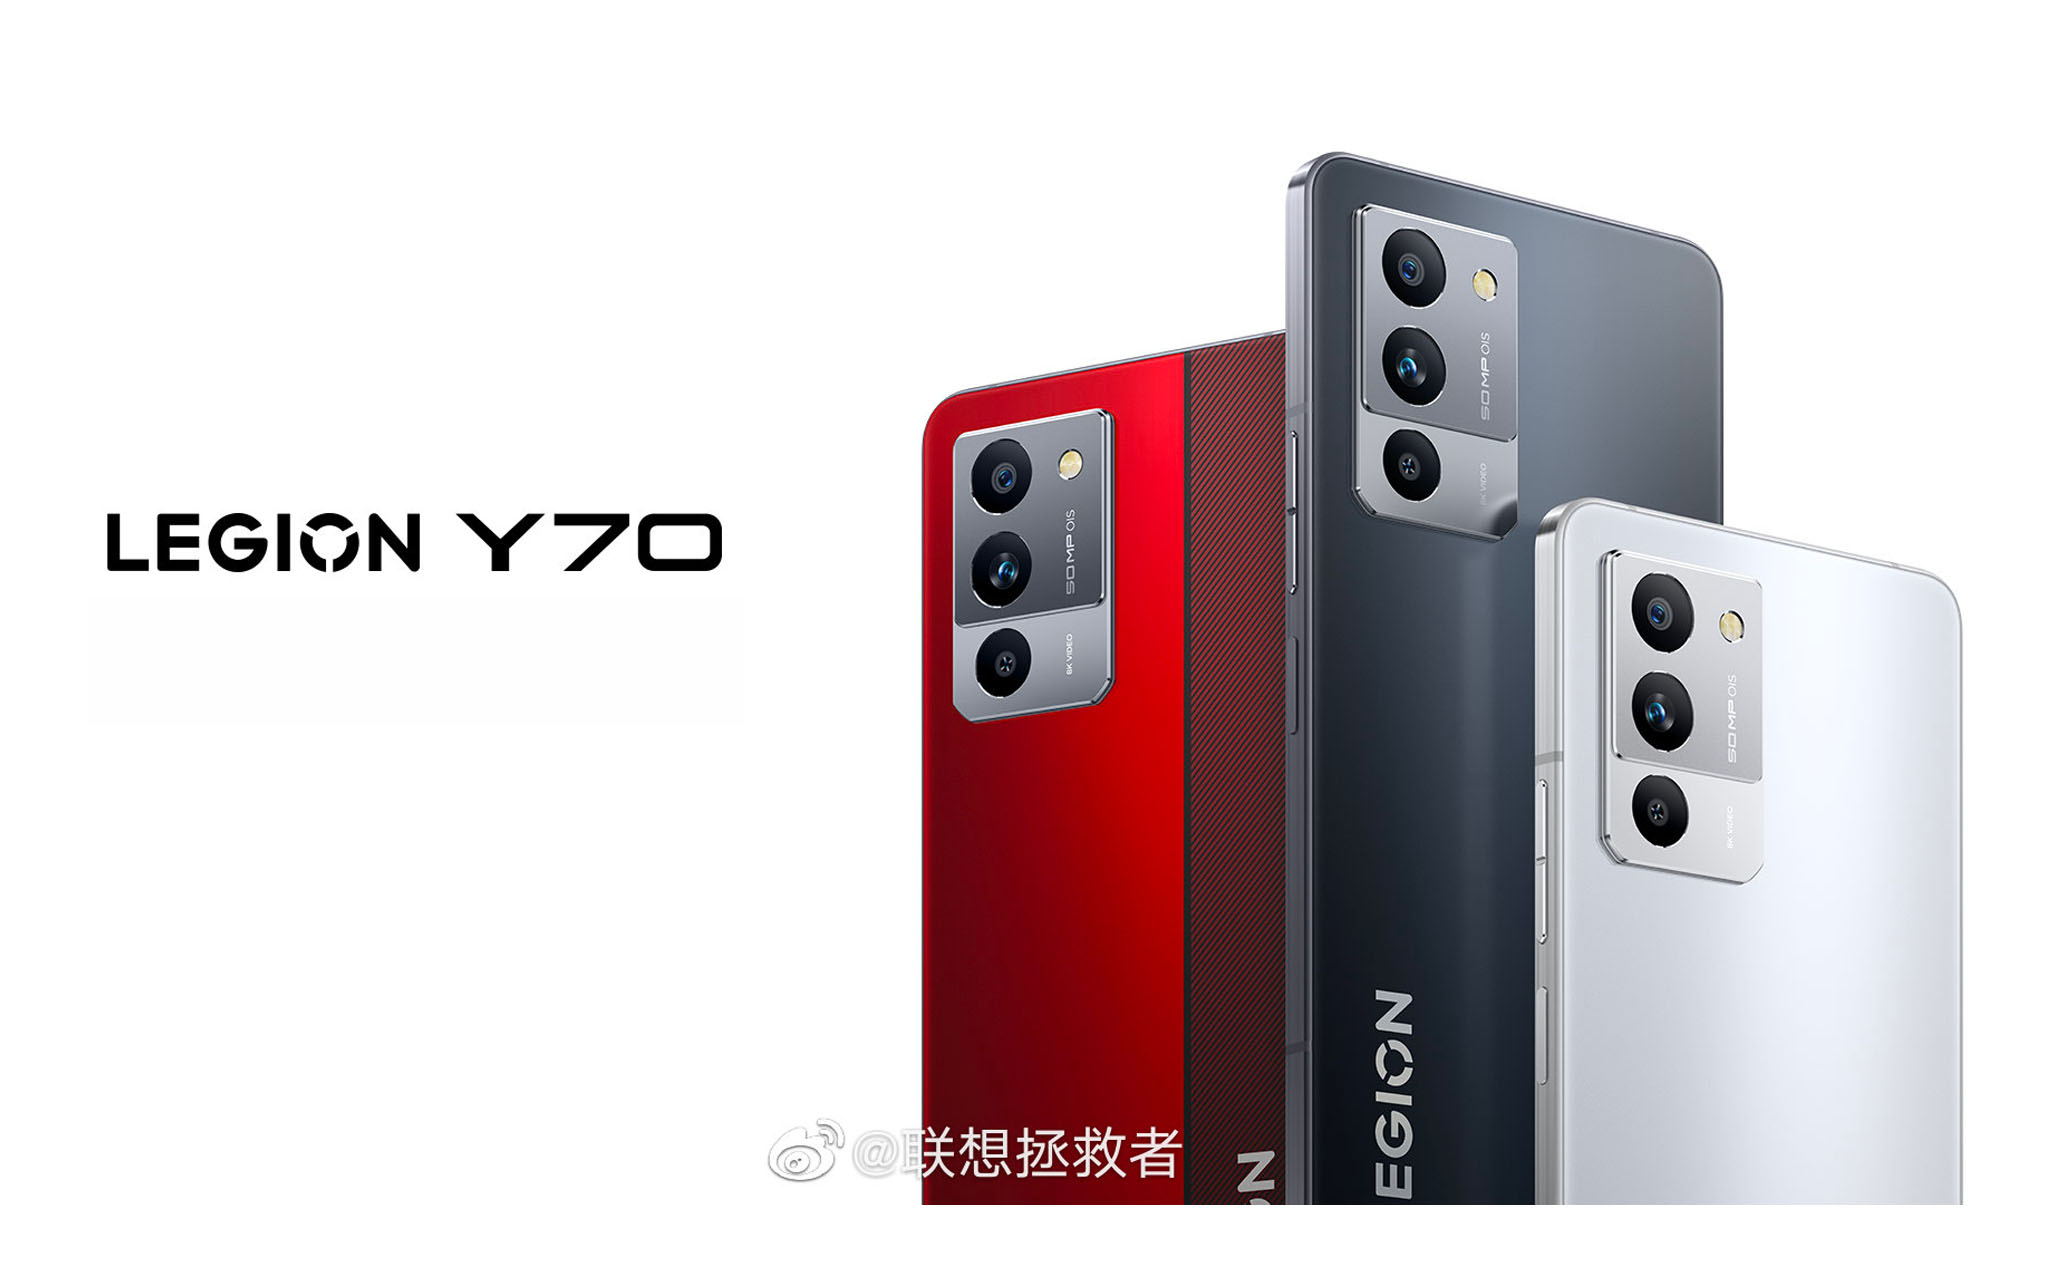 Lenovo Legion Y70 sẽ ra mắt vào ngày 18/08, chạy chip Snapdragon 8+ Gen 1, camera hỗ trợ OIS